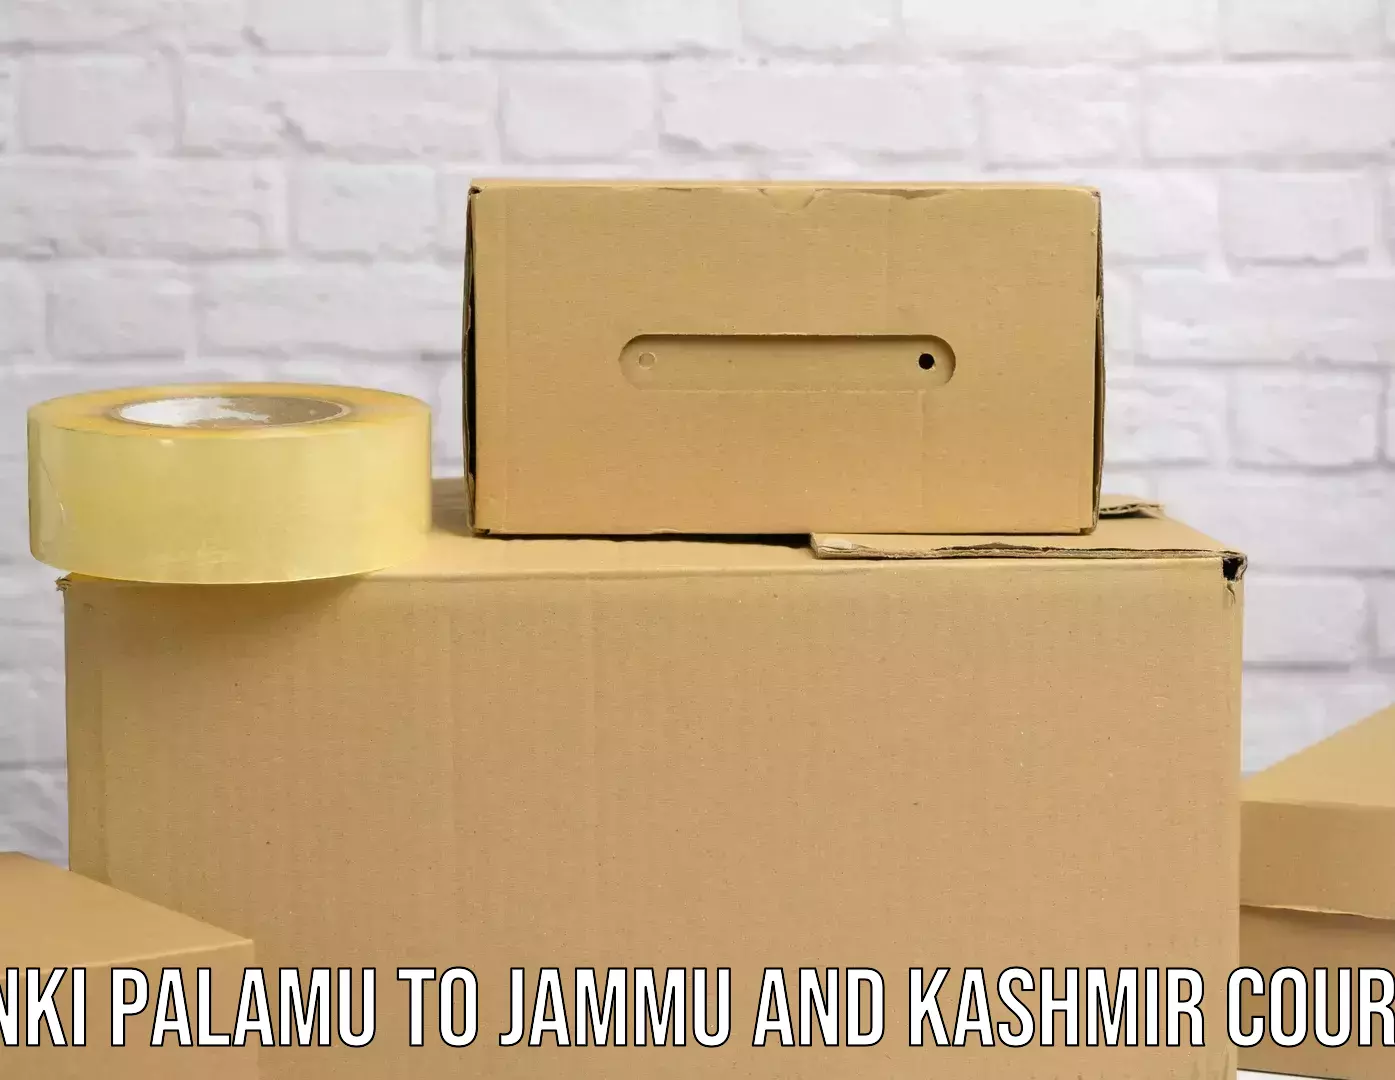 International logistics Panki Palamu to Srinagar Kashmir